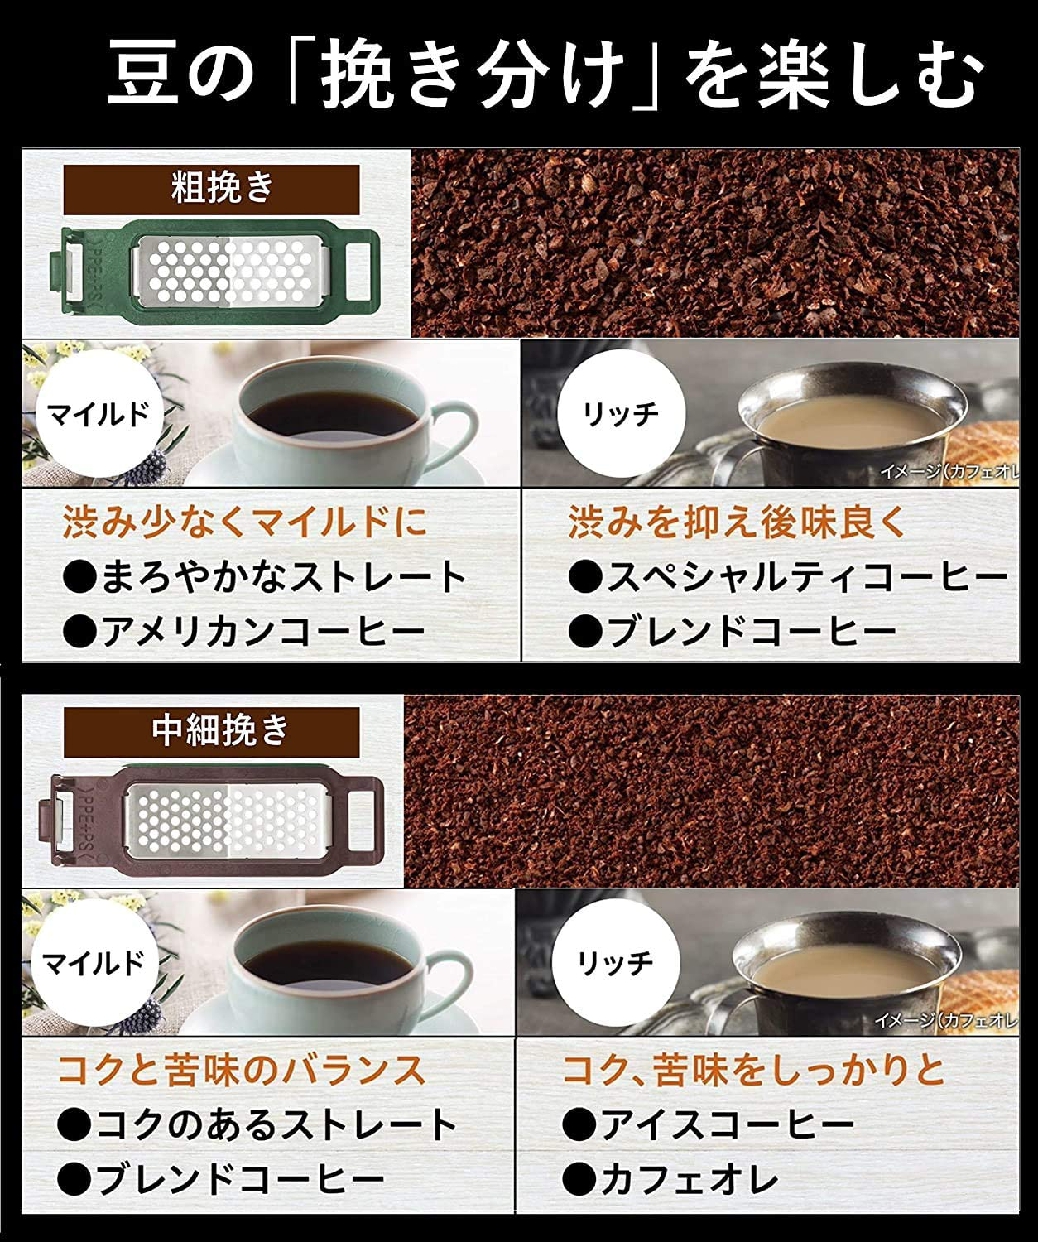 Panasonic(パナソニック) 沸騰浄水コーヒーメーカー NC-A57の商品画像サムネ4 